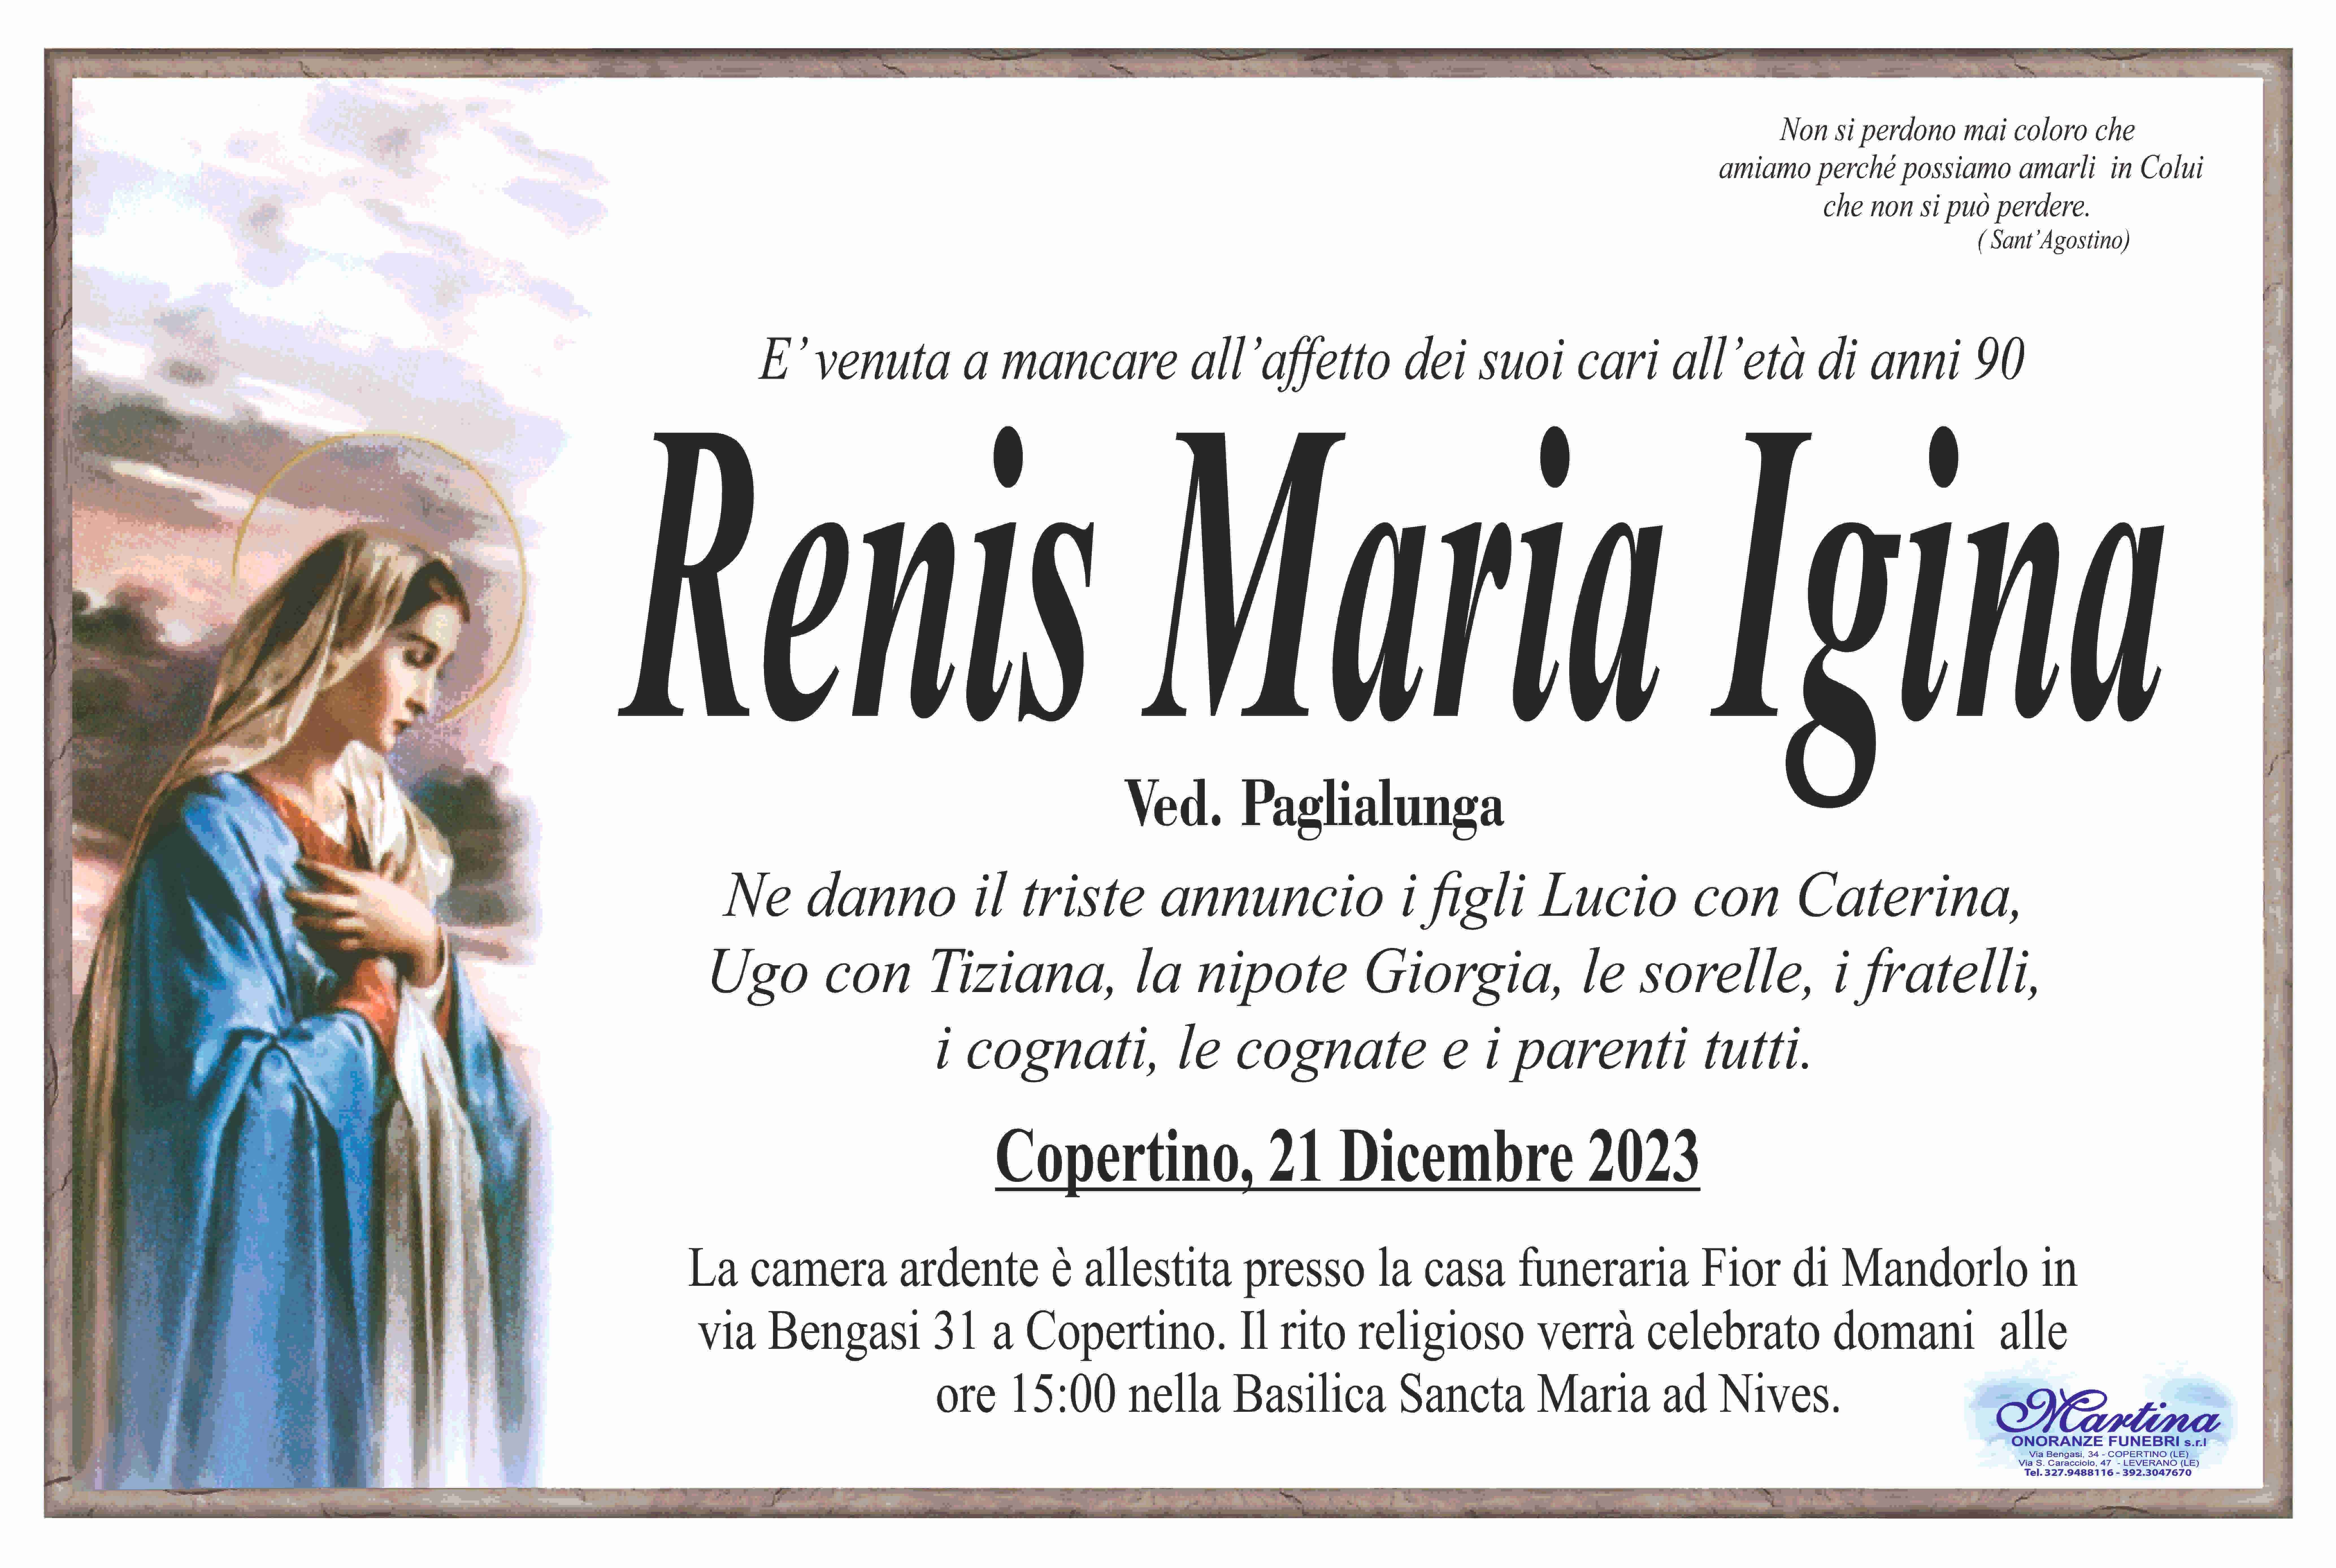 Maria Igina Renis